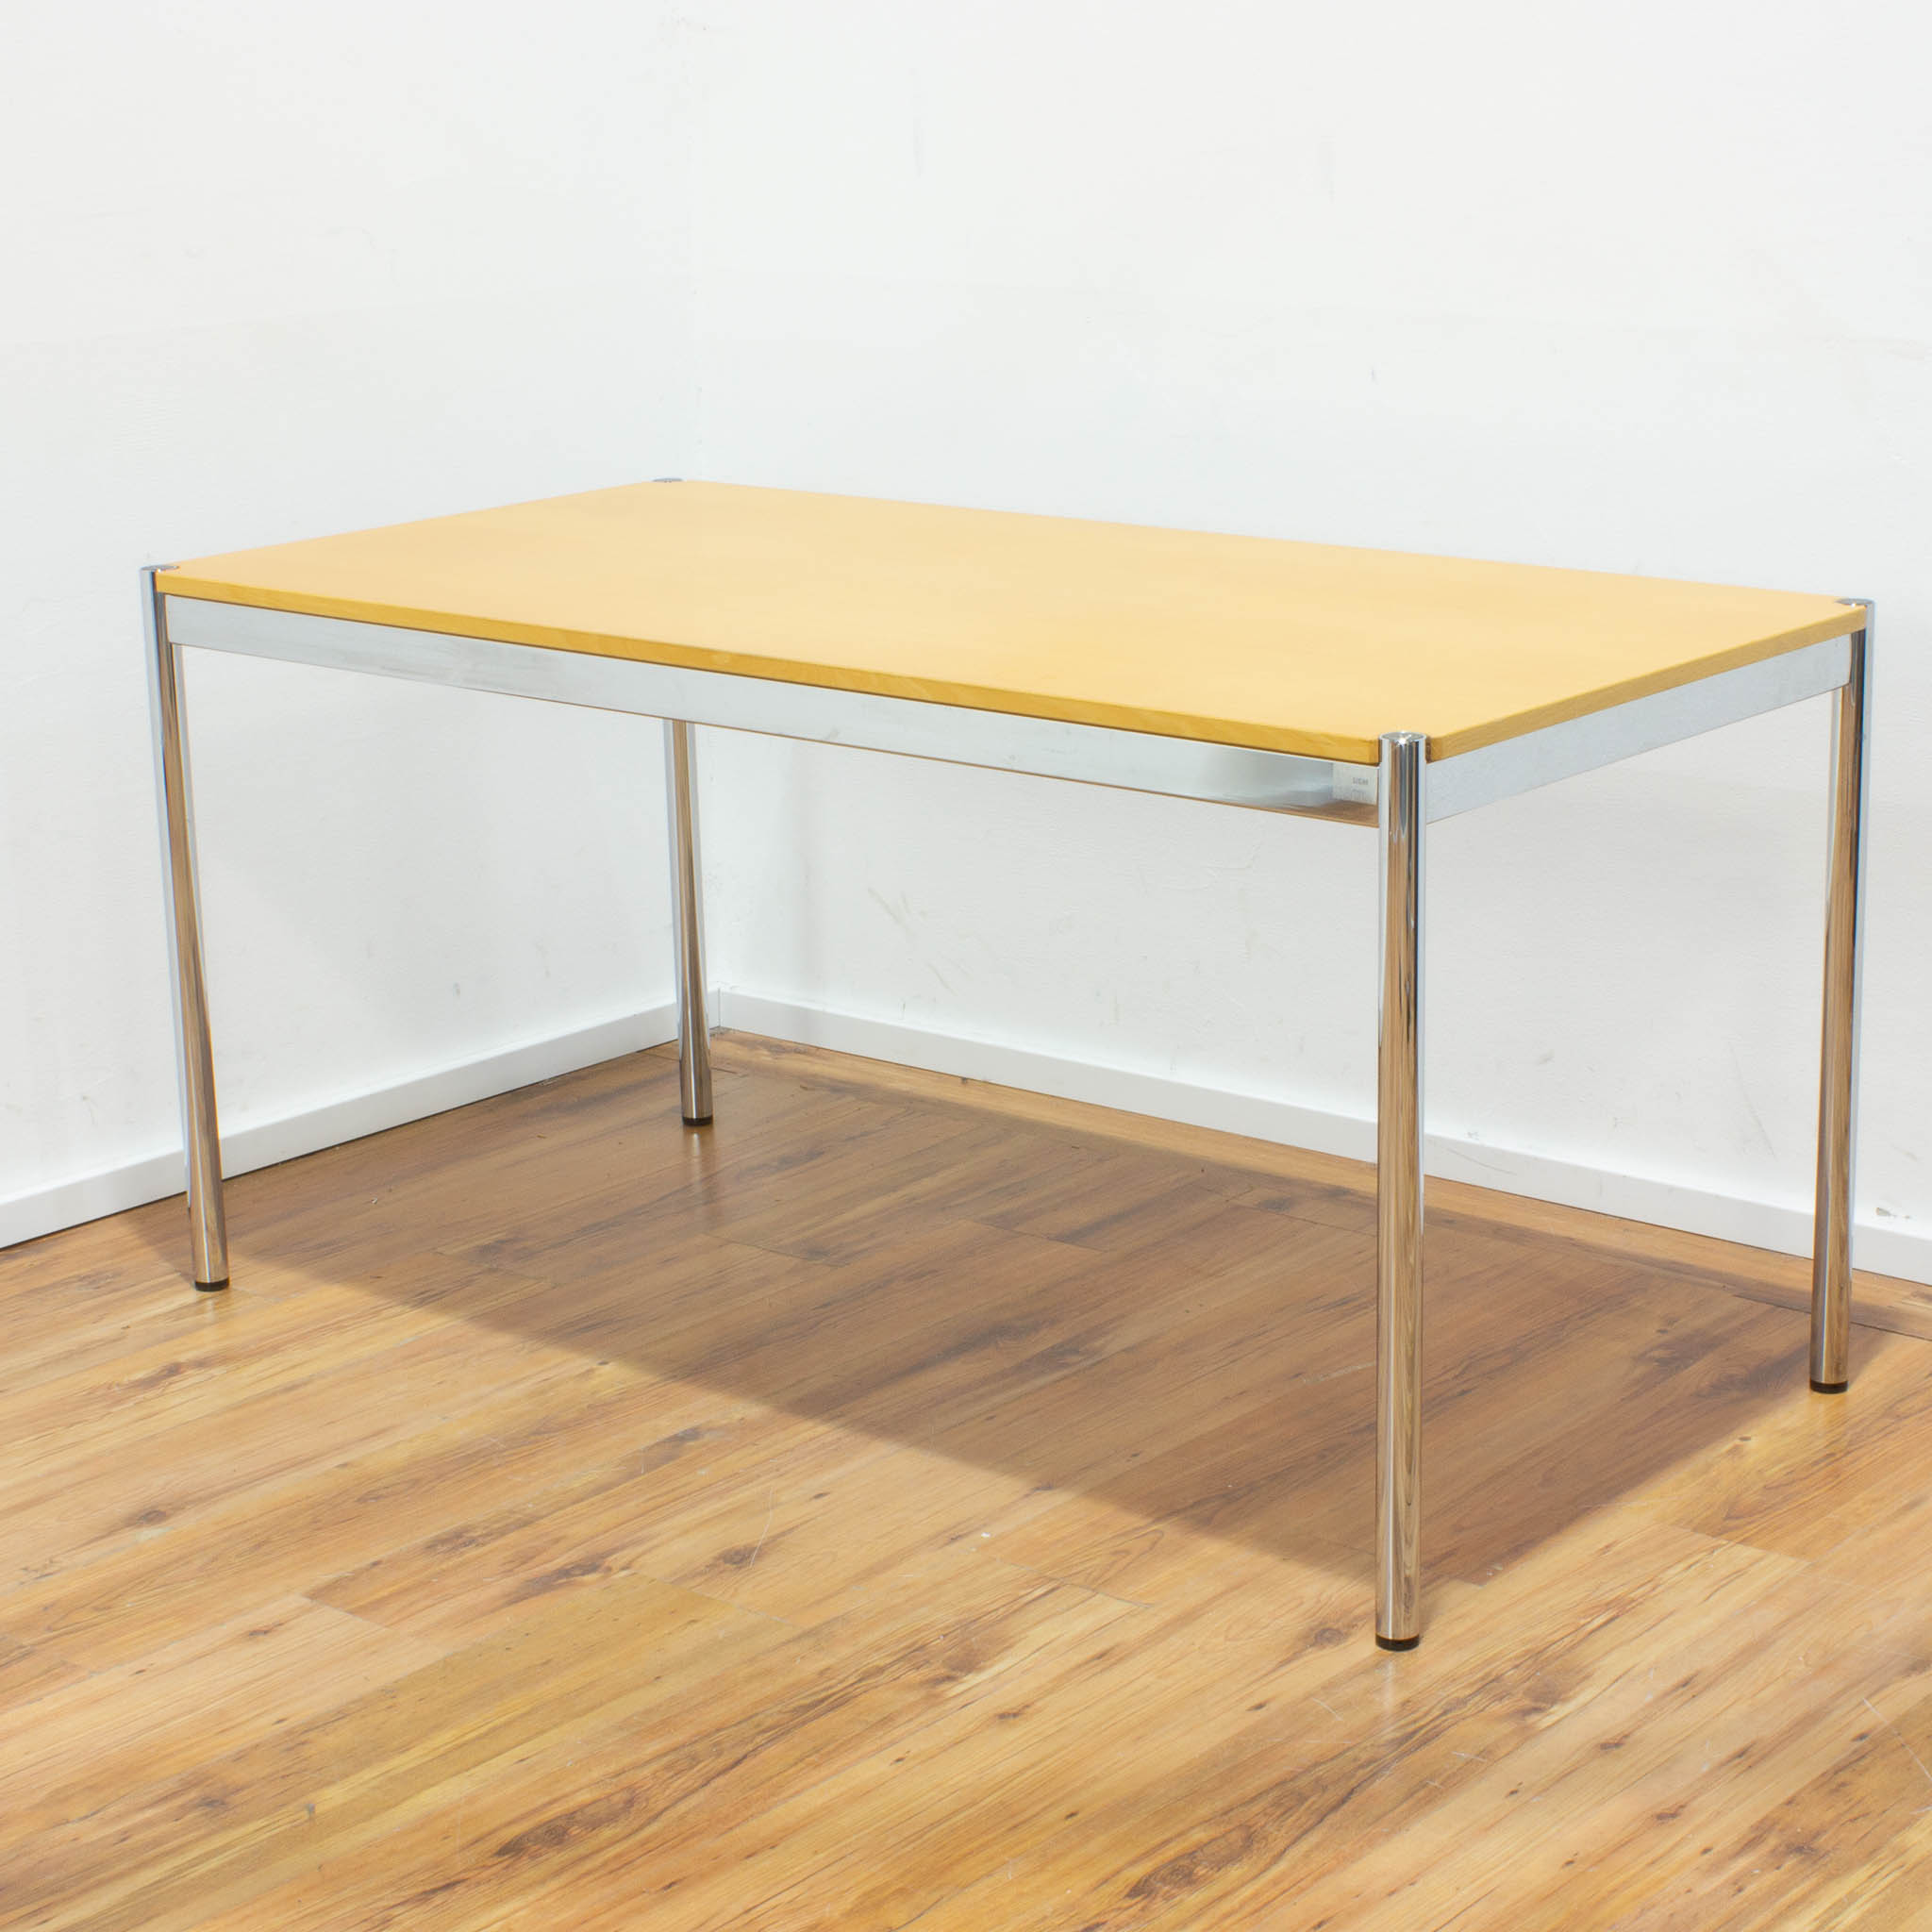 USM Haller Schreibtisch - Tischplatte buche gebraucht - 150 x 75 cm